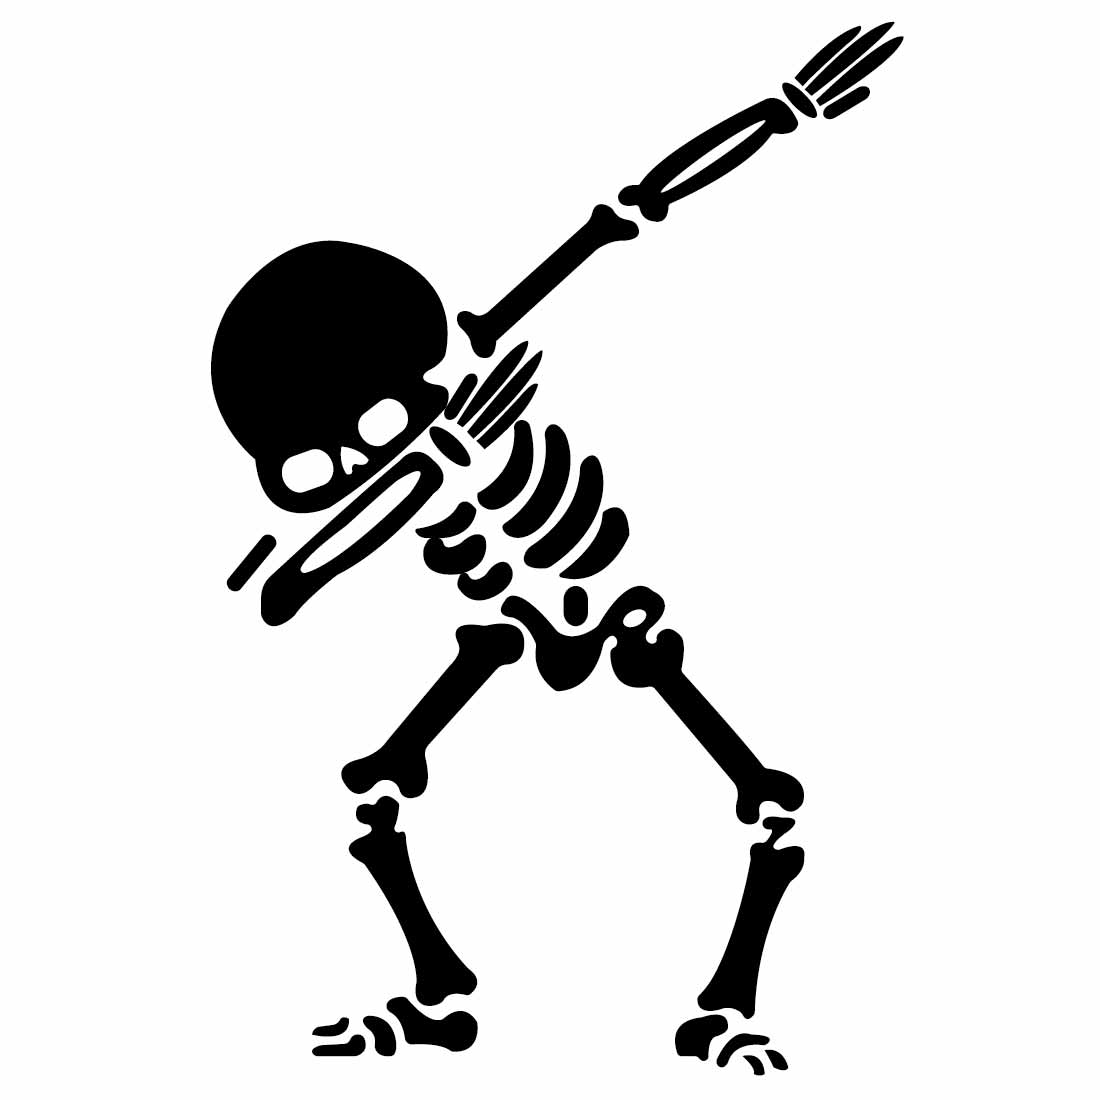 Illustration of calaca dancing on black background skeleton dancer vector preview image.